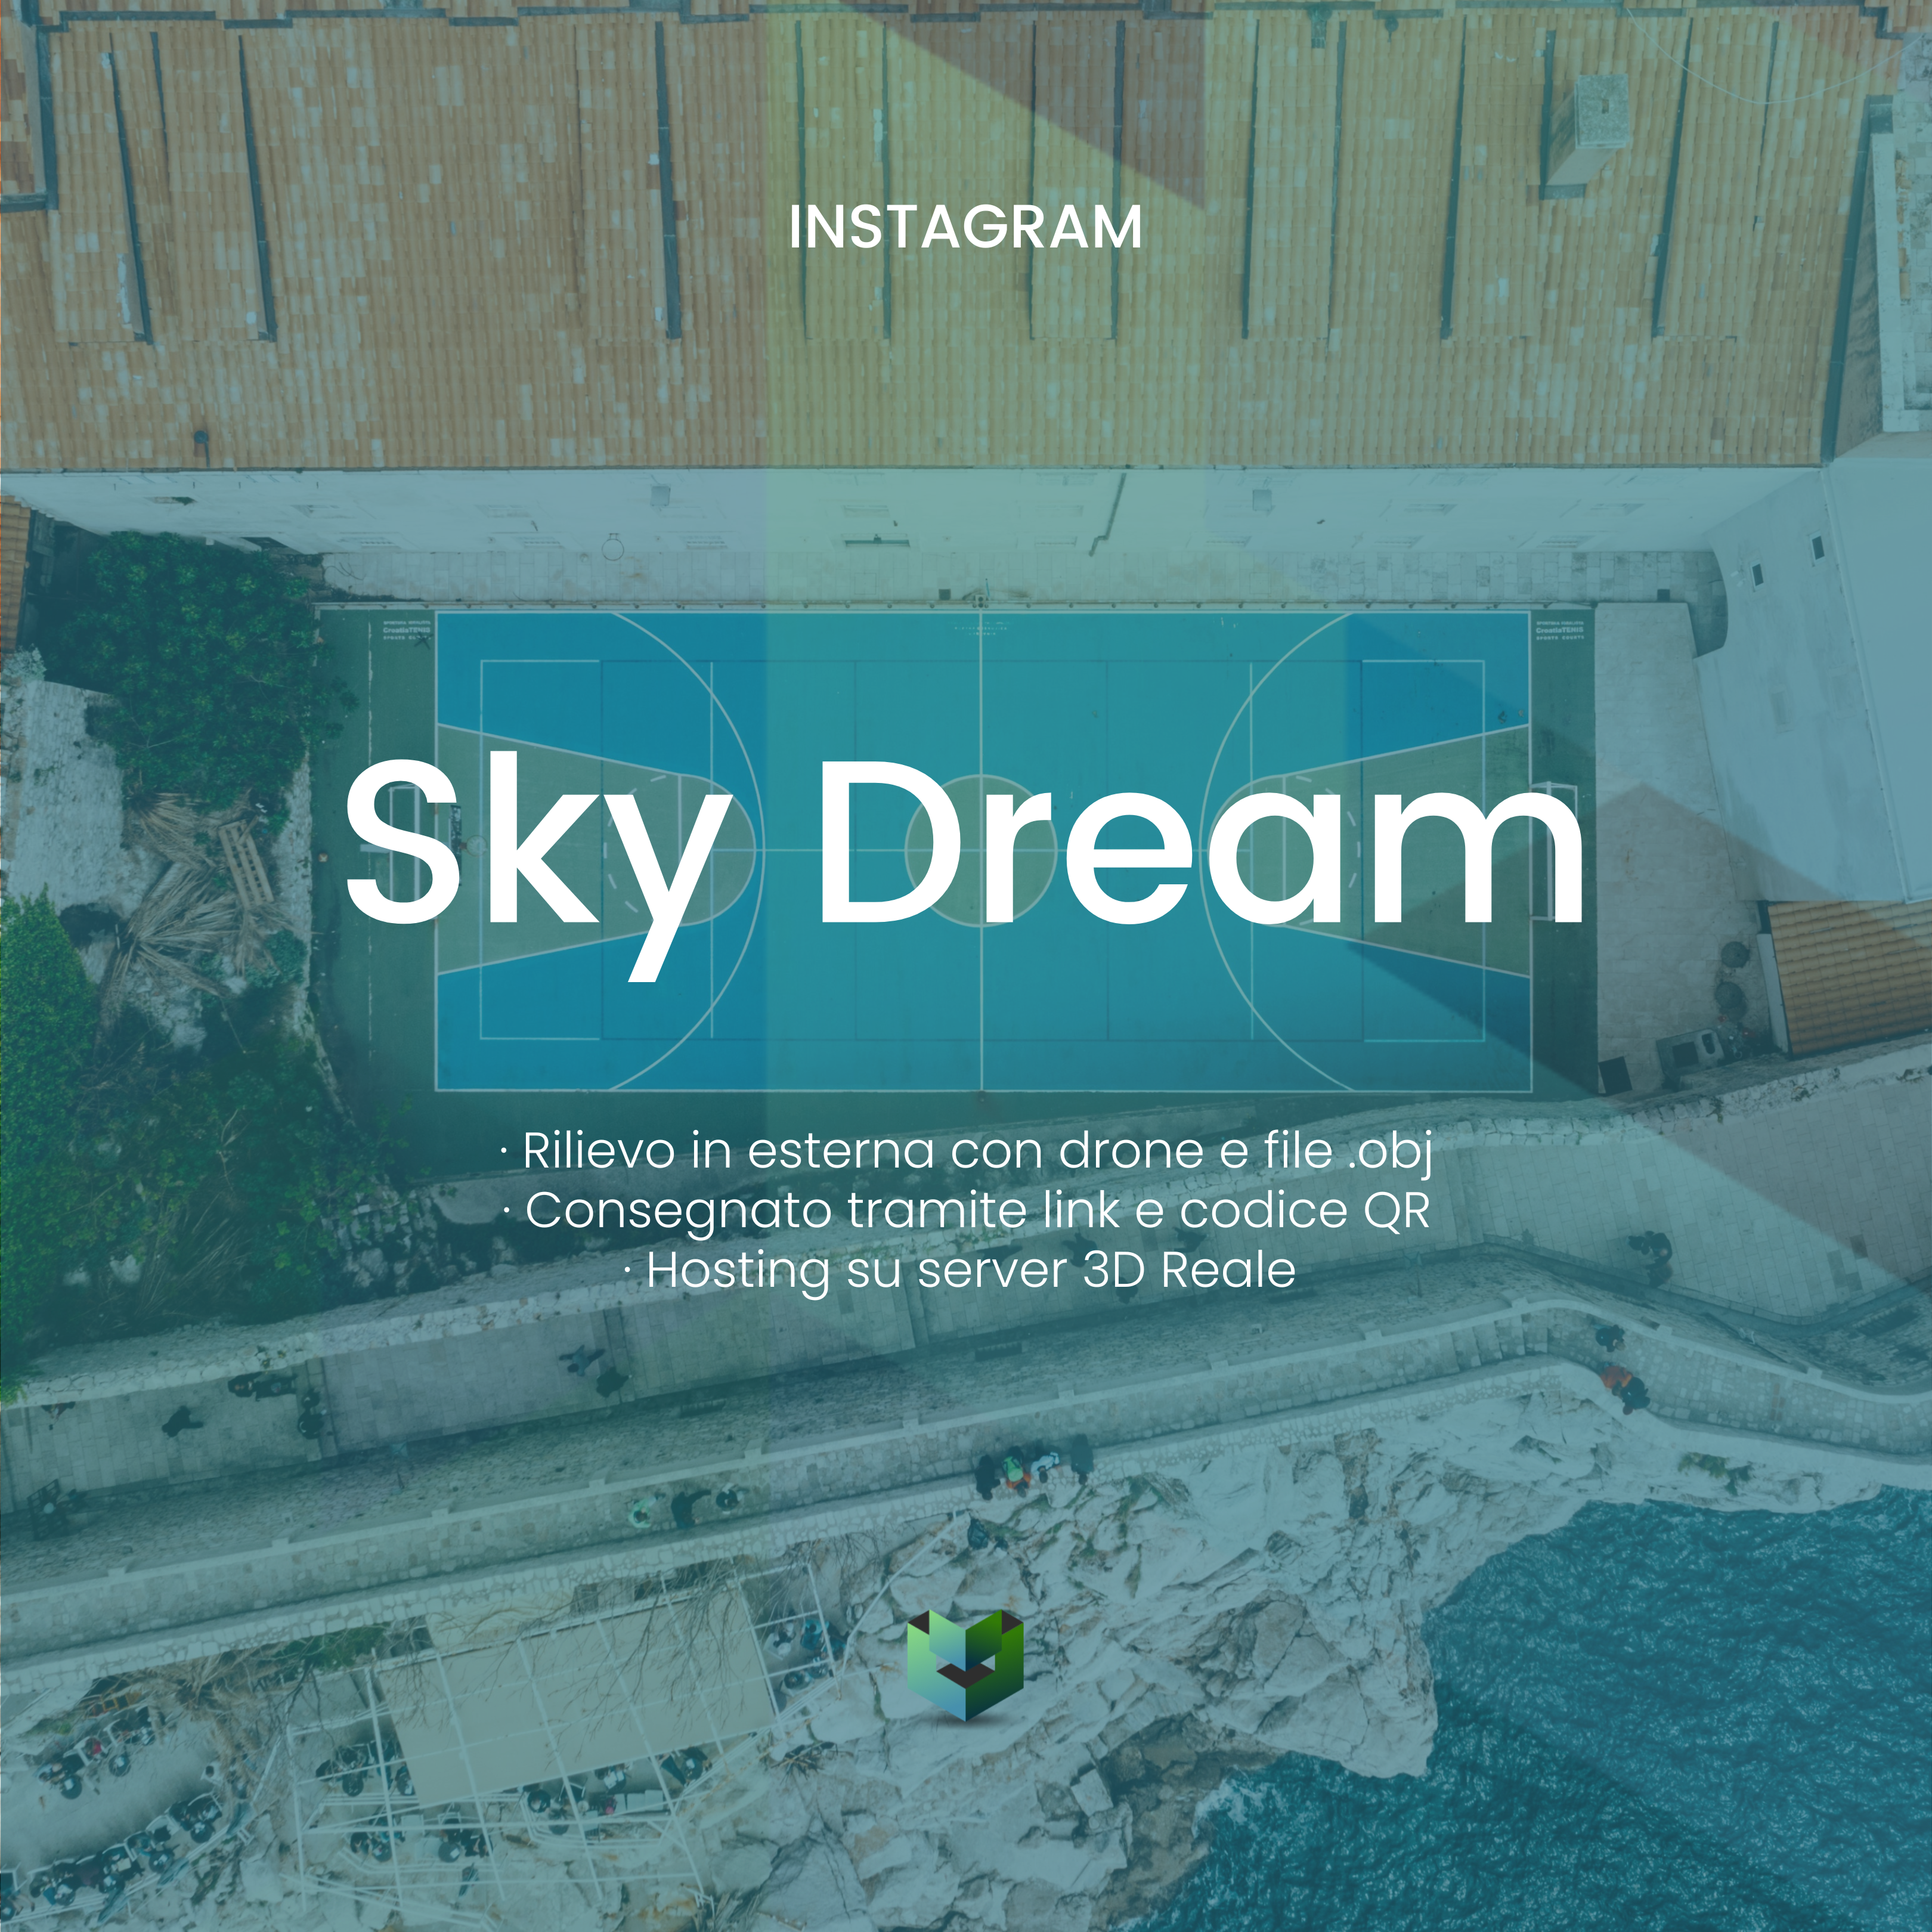 SKY DREAM